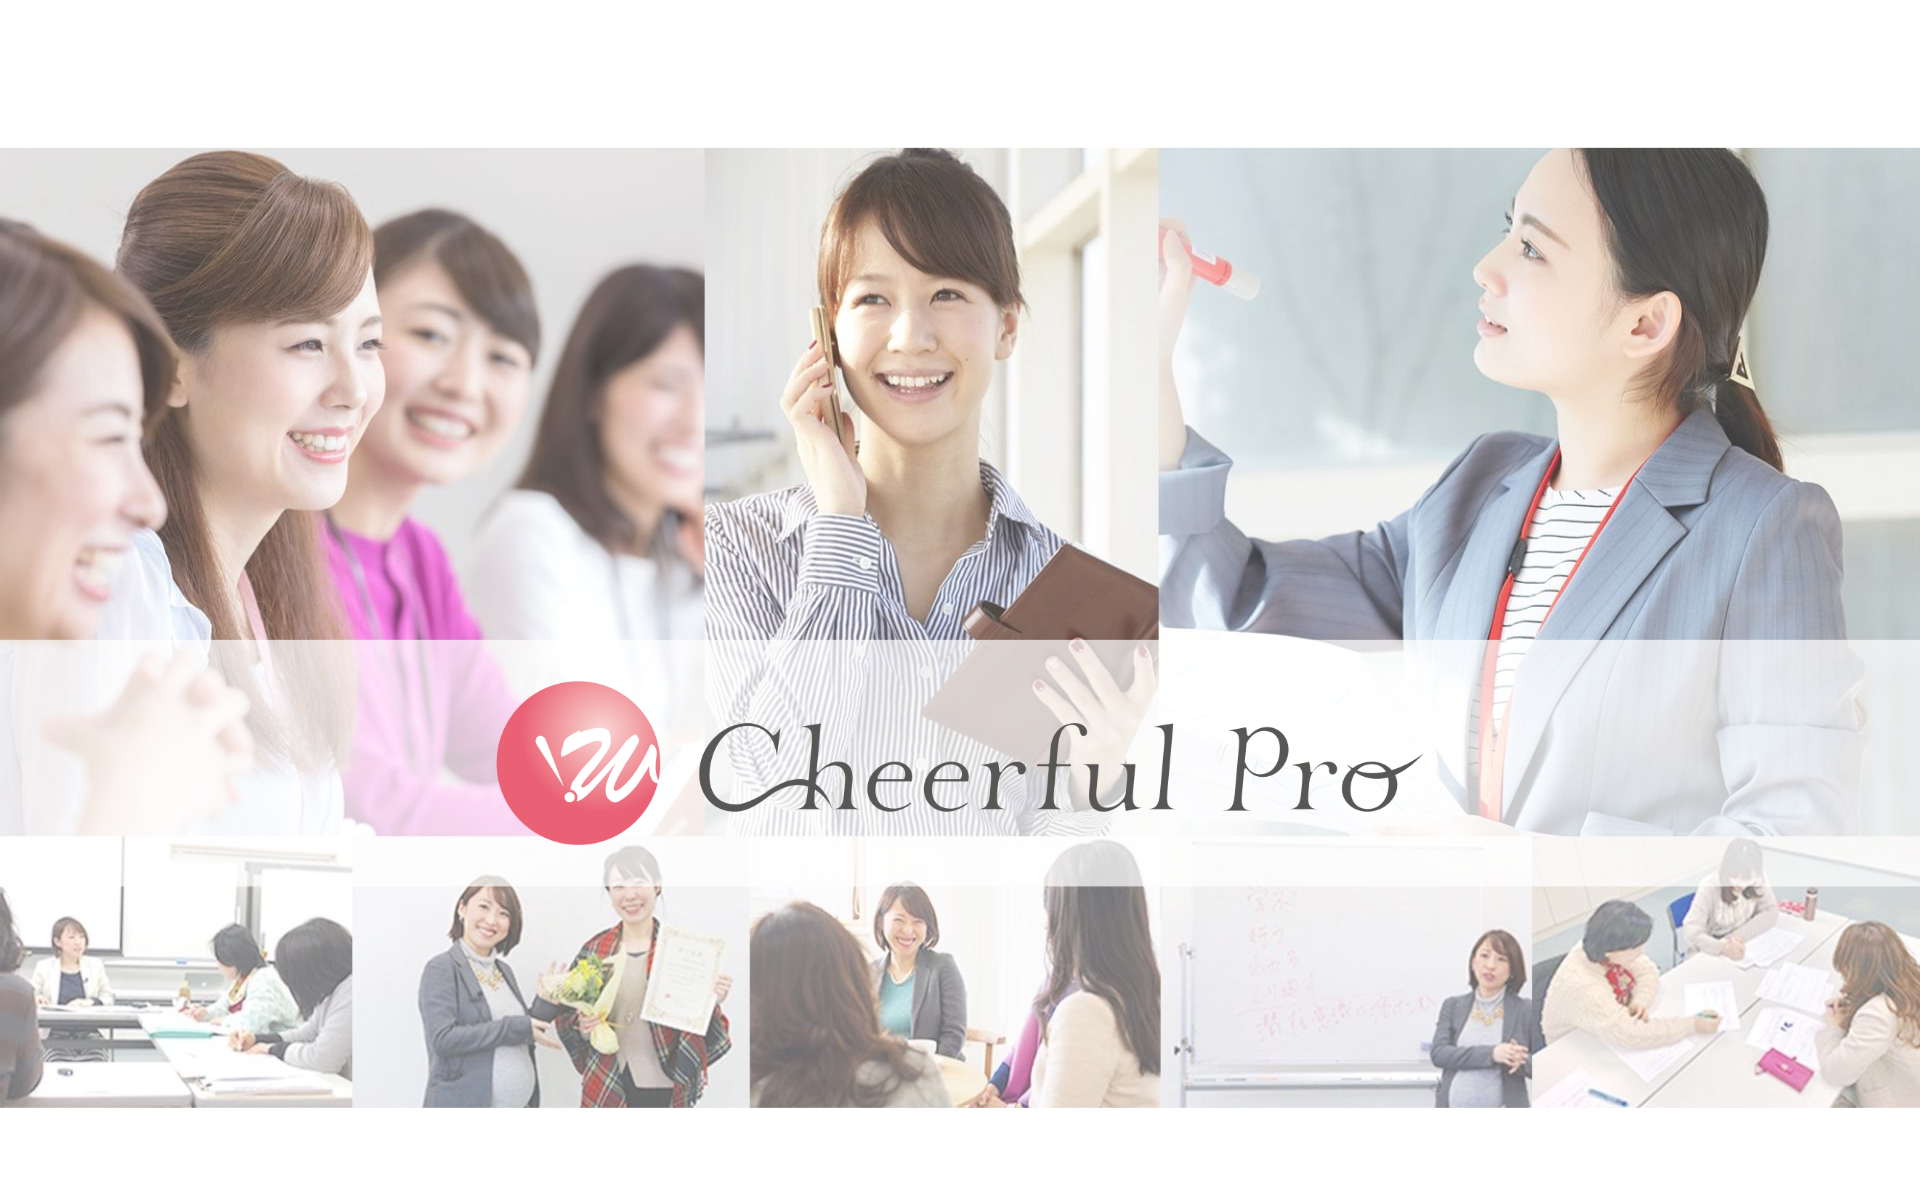 女性の起業経営を支援するCheerful proのロゴ